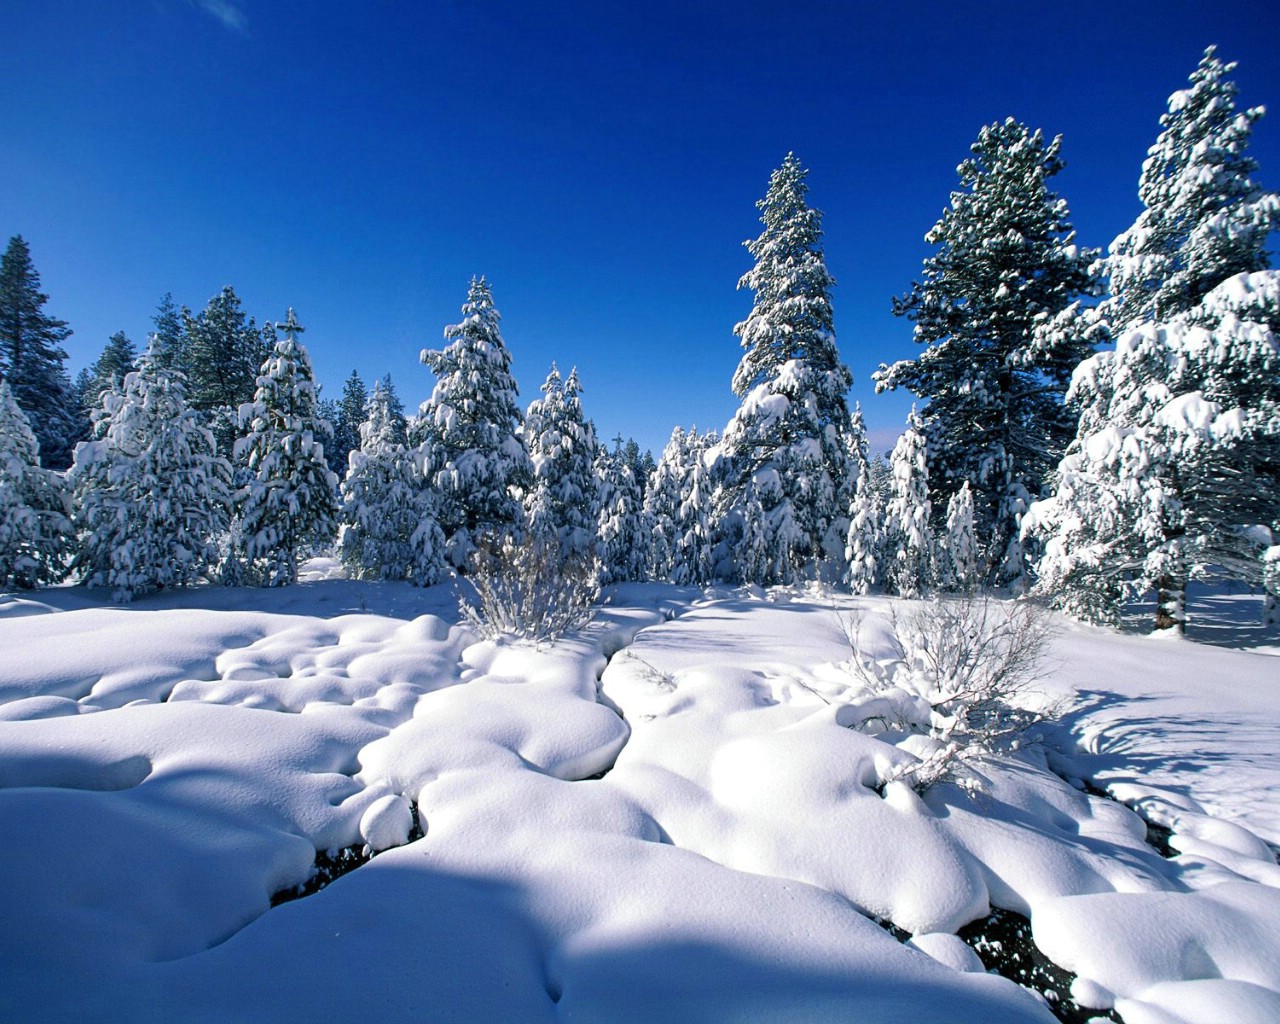 浪漫雪景(风景手机动态壁纸) - 风景手机壁纸下载 - 元气壁纸